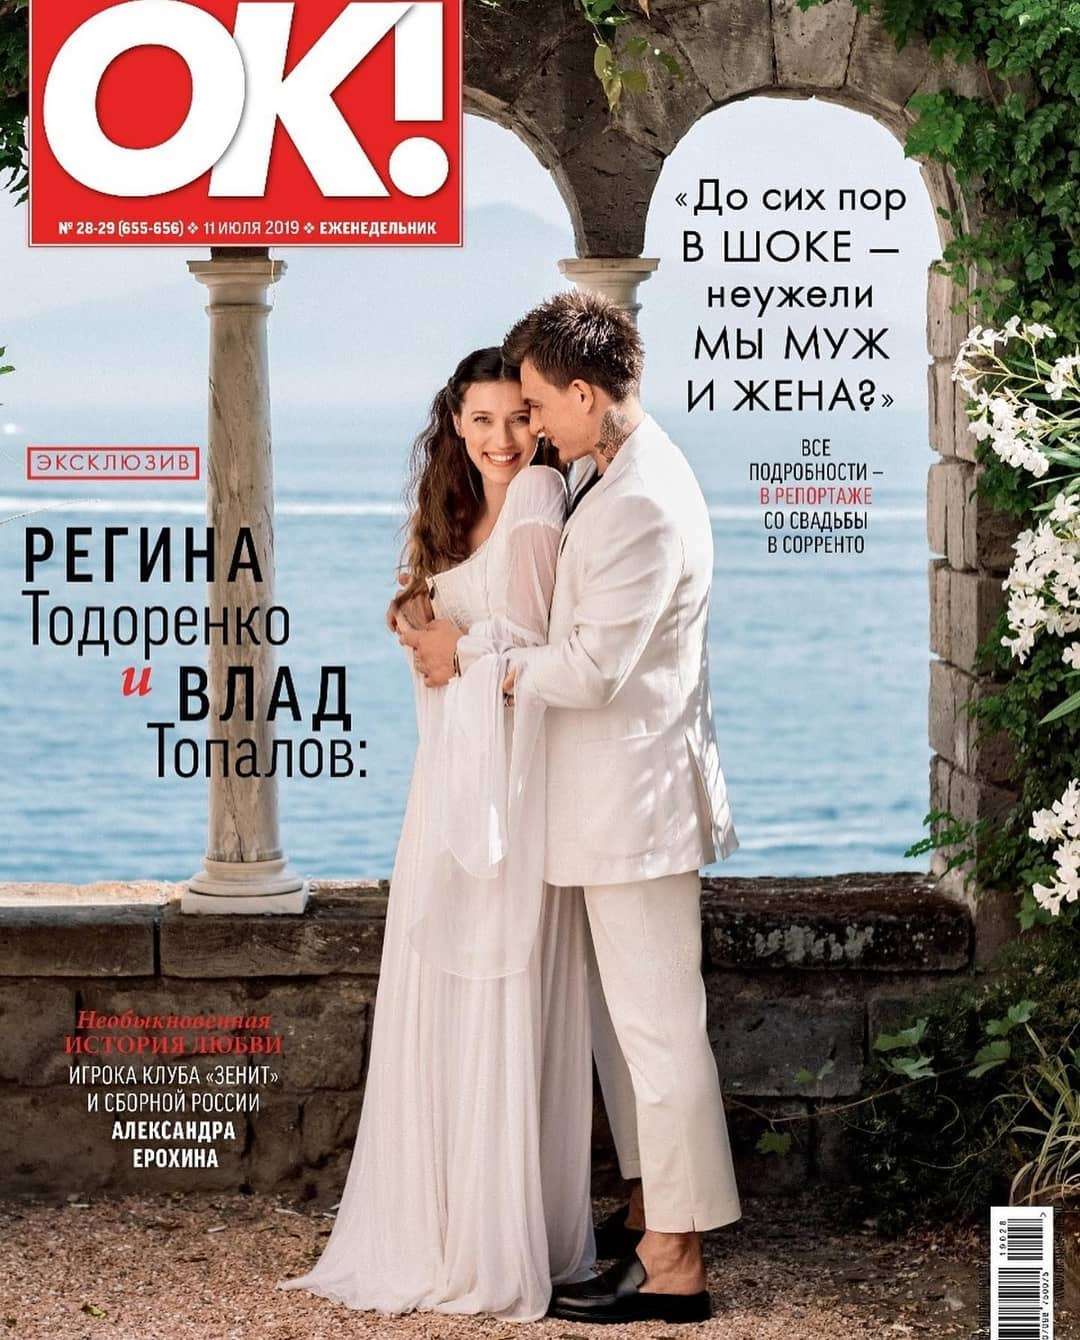 Регина Тодоренко умилила сеть официальными фото своей звездной свадьбы - фото 441303